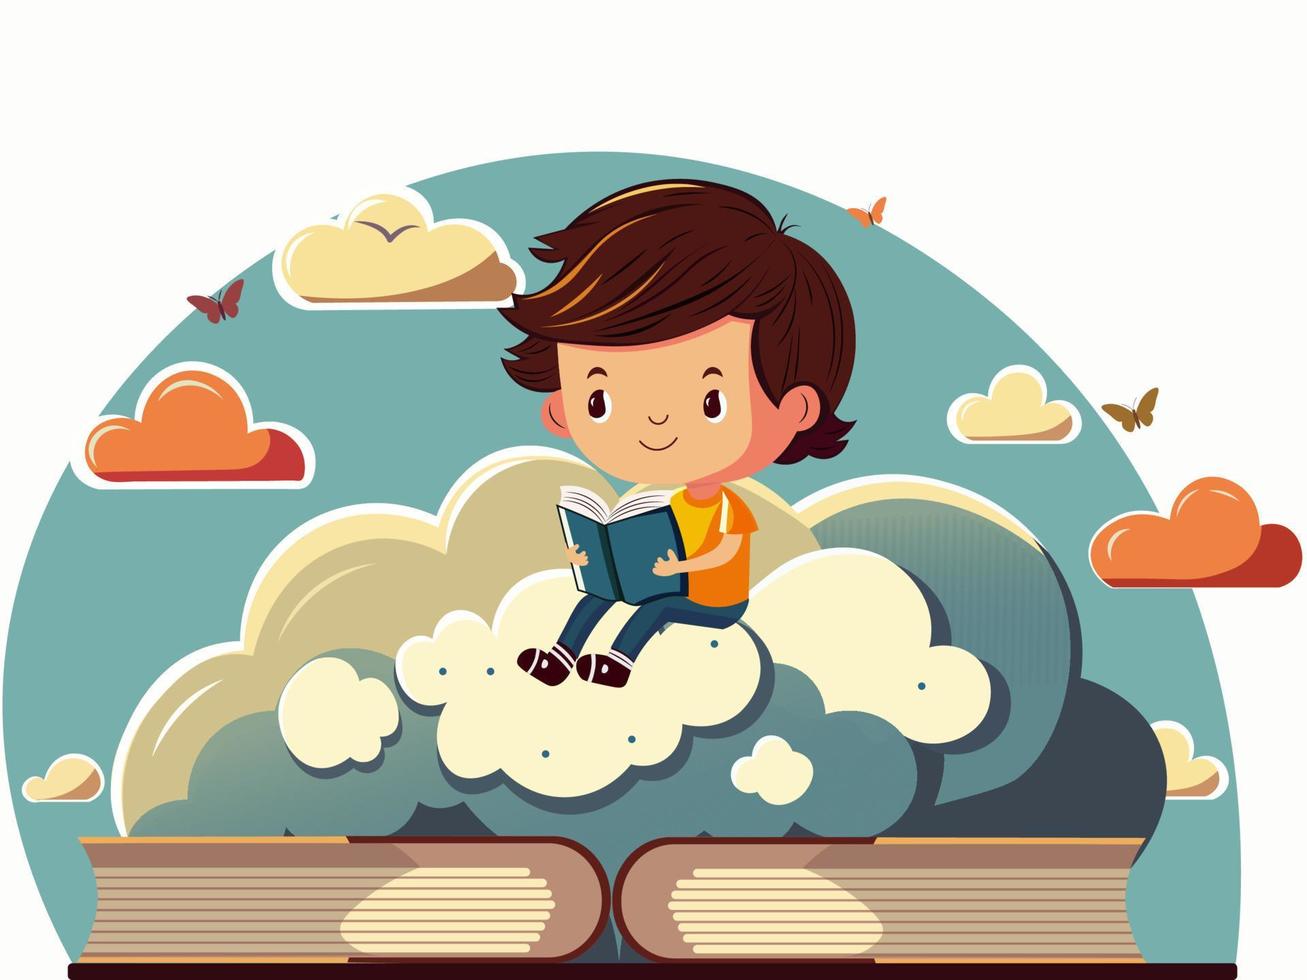 linda chico personaje leyendo libro en nubes antecedentes con mariposas vector